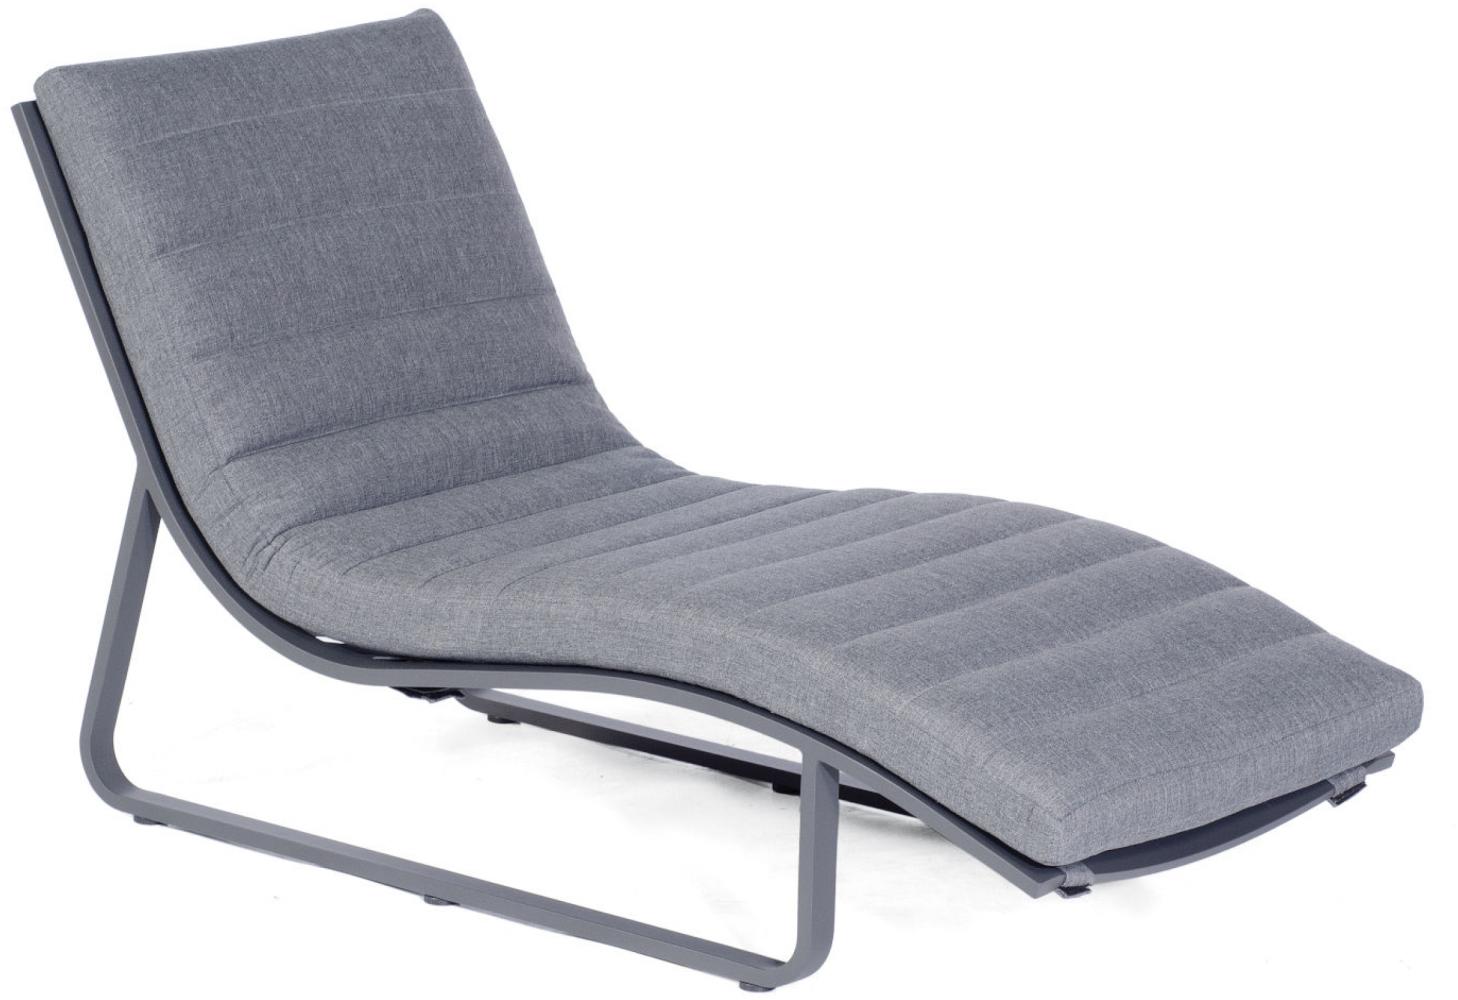 Sonnenpartner Lounge-Liege Cloud Aluminium anthrazit mit Auflage Relaxsessel Gartenliege Bild 1